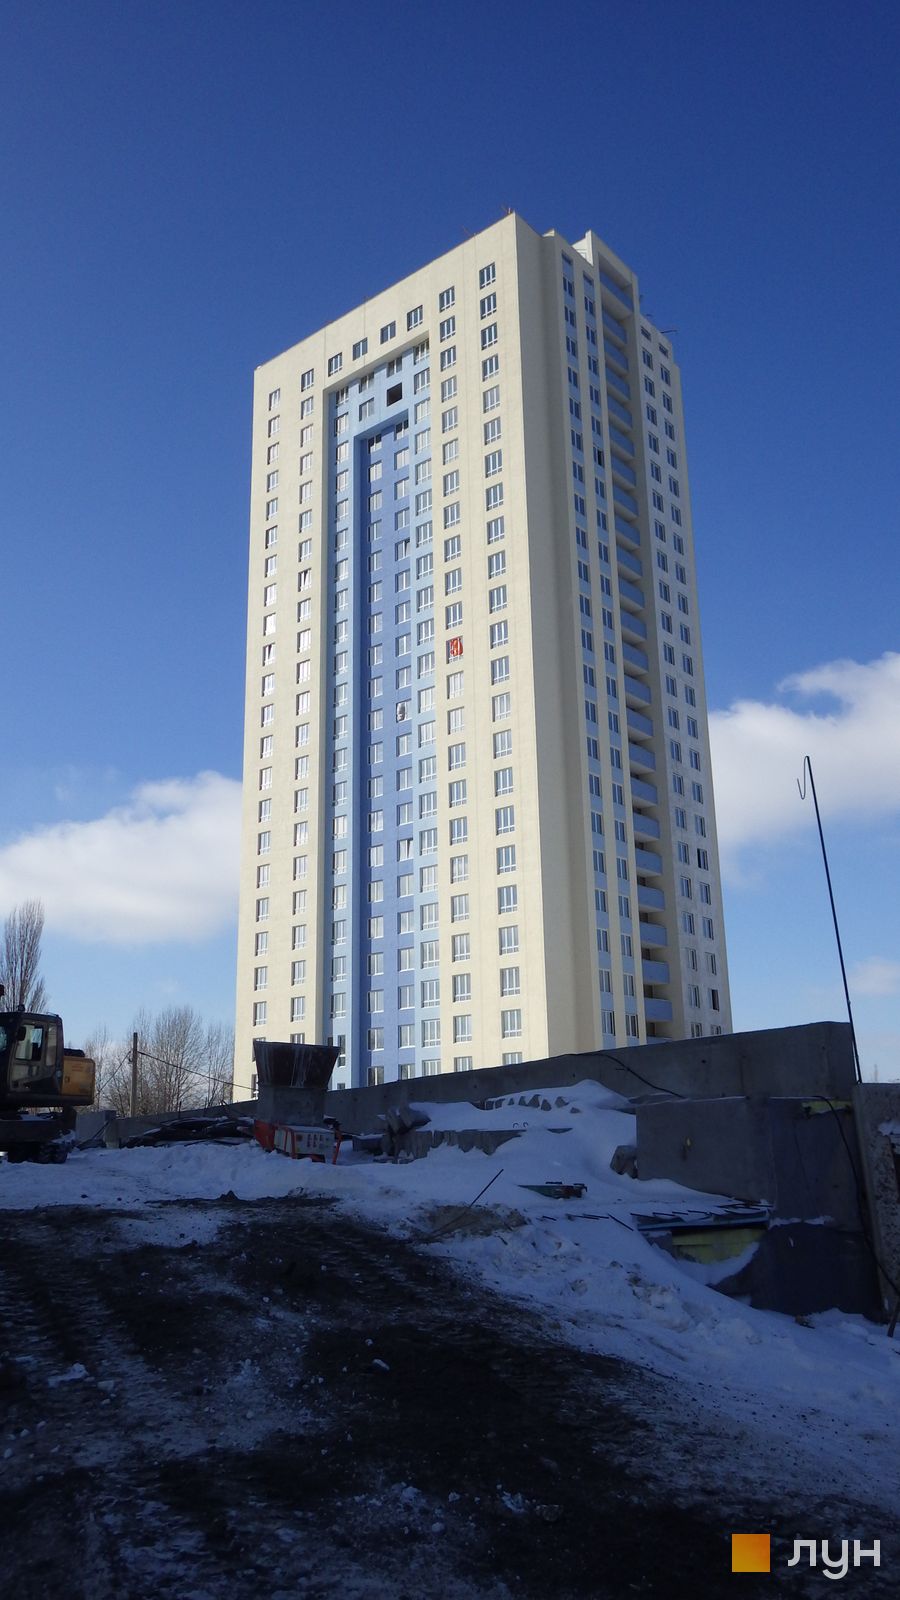 Моніторинг будівництва ЖК Академіка Глушкова, 92б - Ракурс 4, февраль 2015